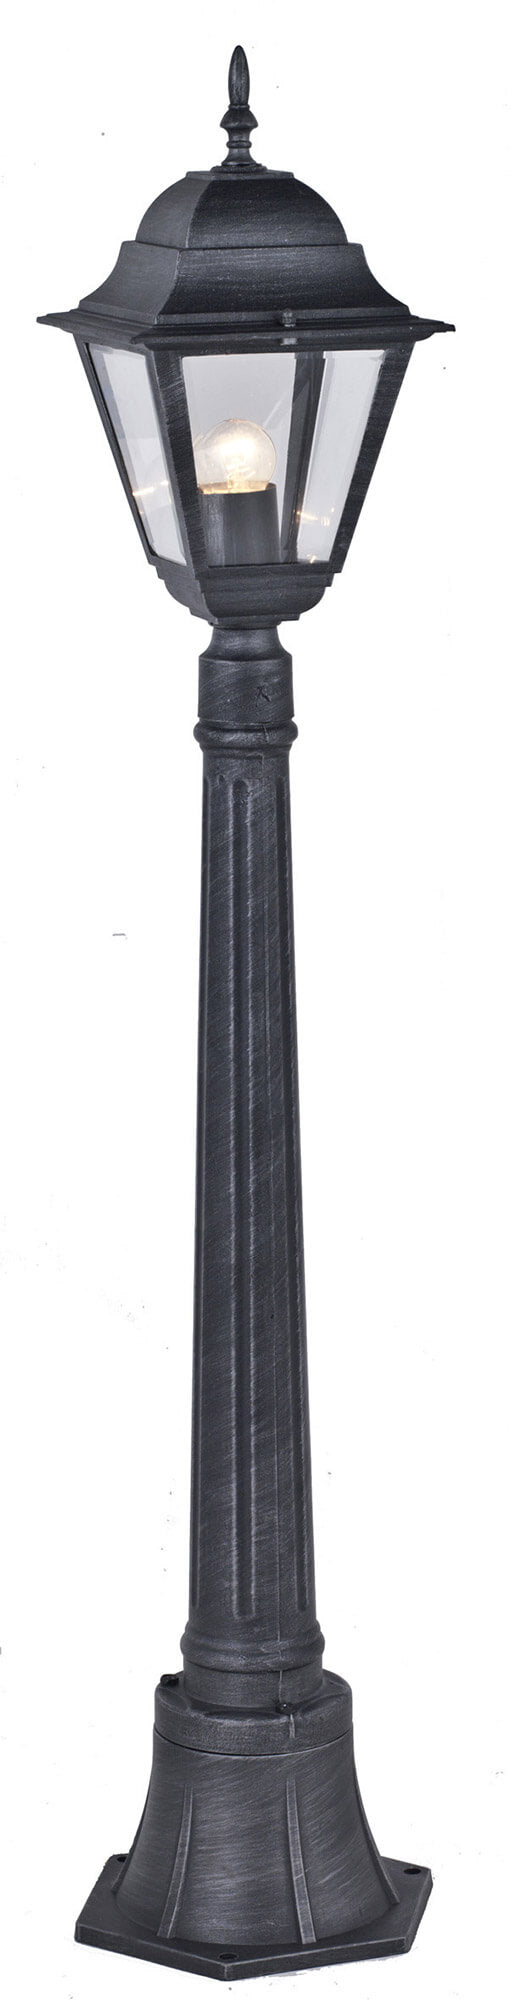 Bauer New York Graue Außenmastleuchte H110 cm acquista